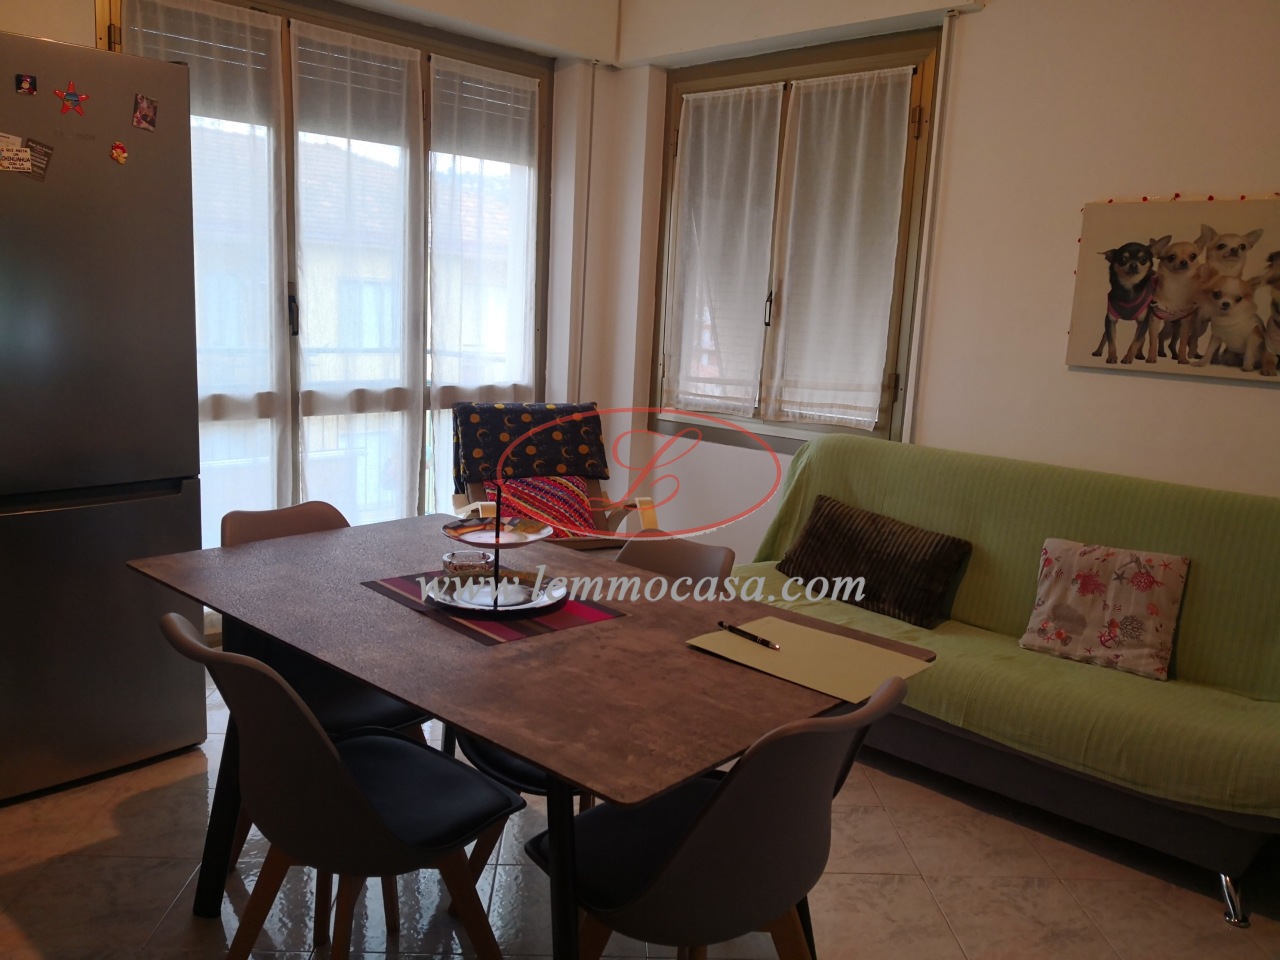 Appartamento in vendita a Diano Marina, 3 locali, prezzo € 260.000 | PortaleAgenzieImmobiliari.it